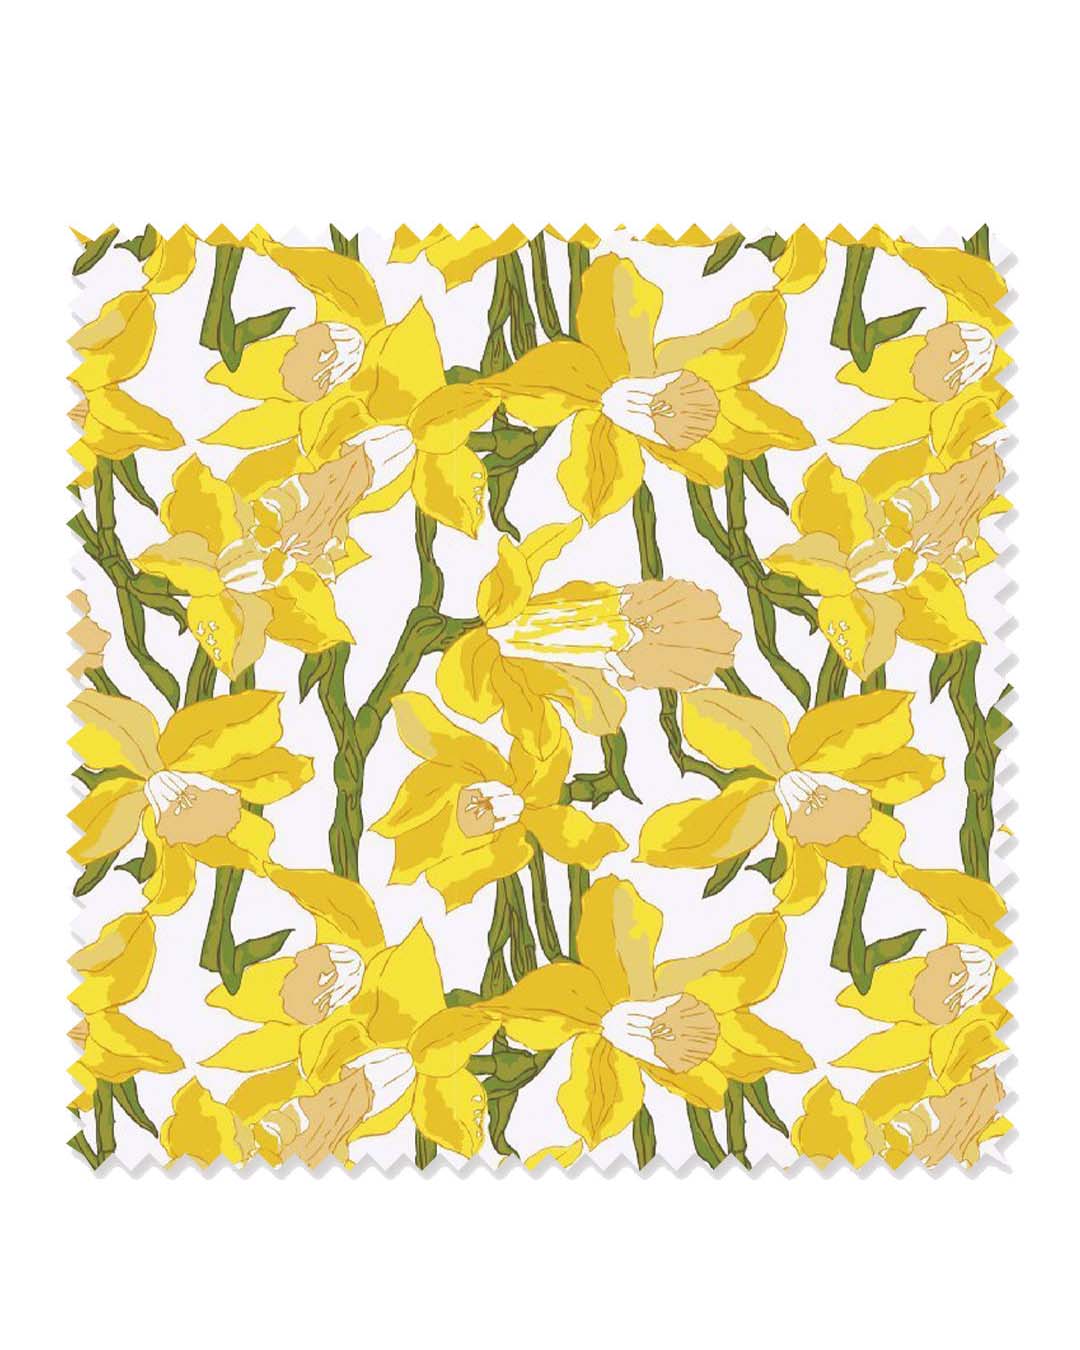 Daffodils Fabric Fabric Katie Kime